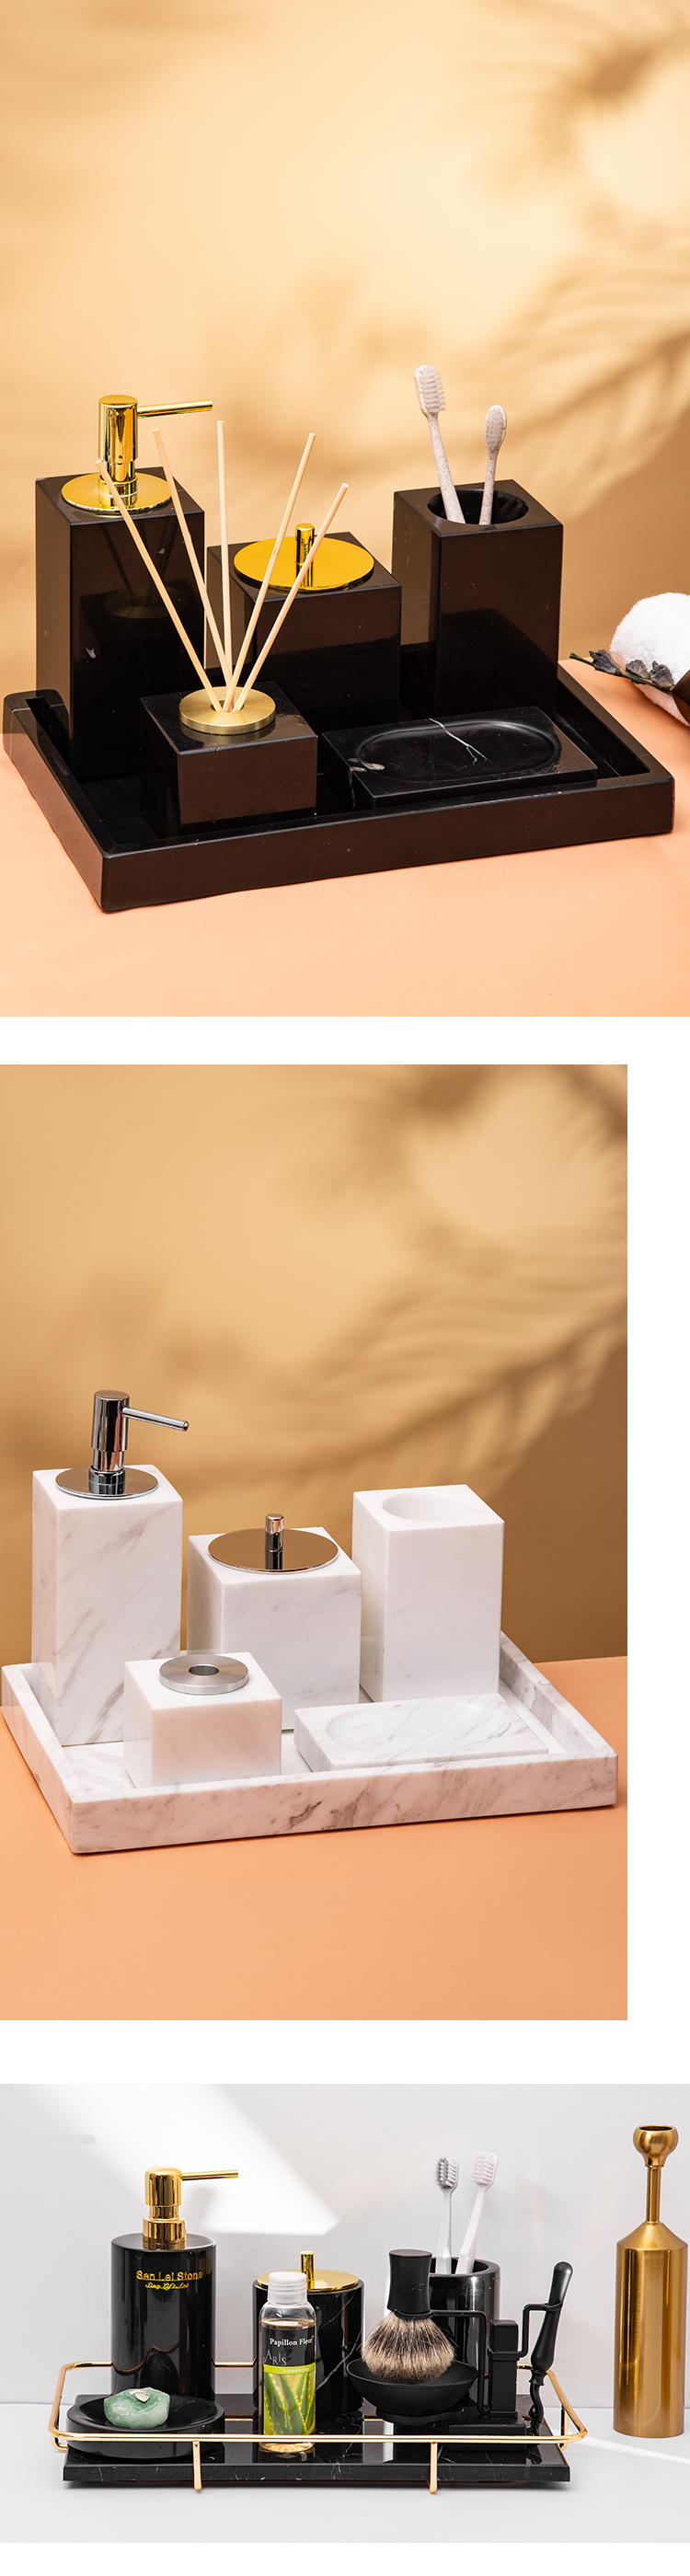 اكسسوارات الحمام الحديثة الراتنج نظرة الرخام